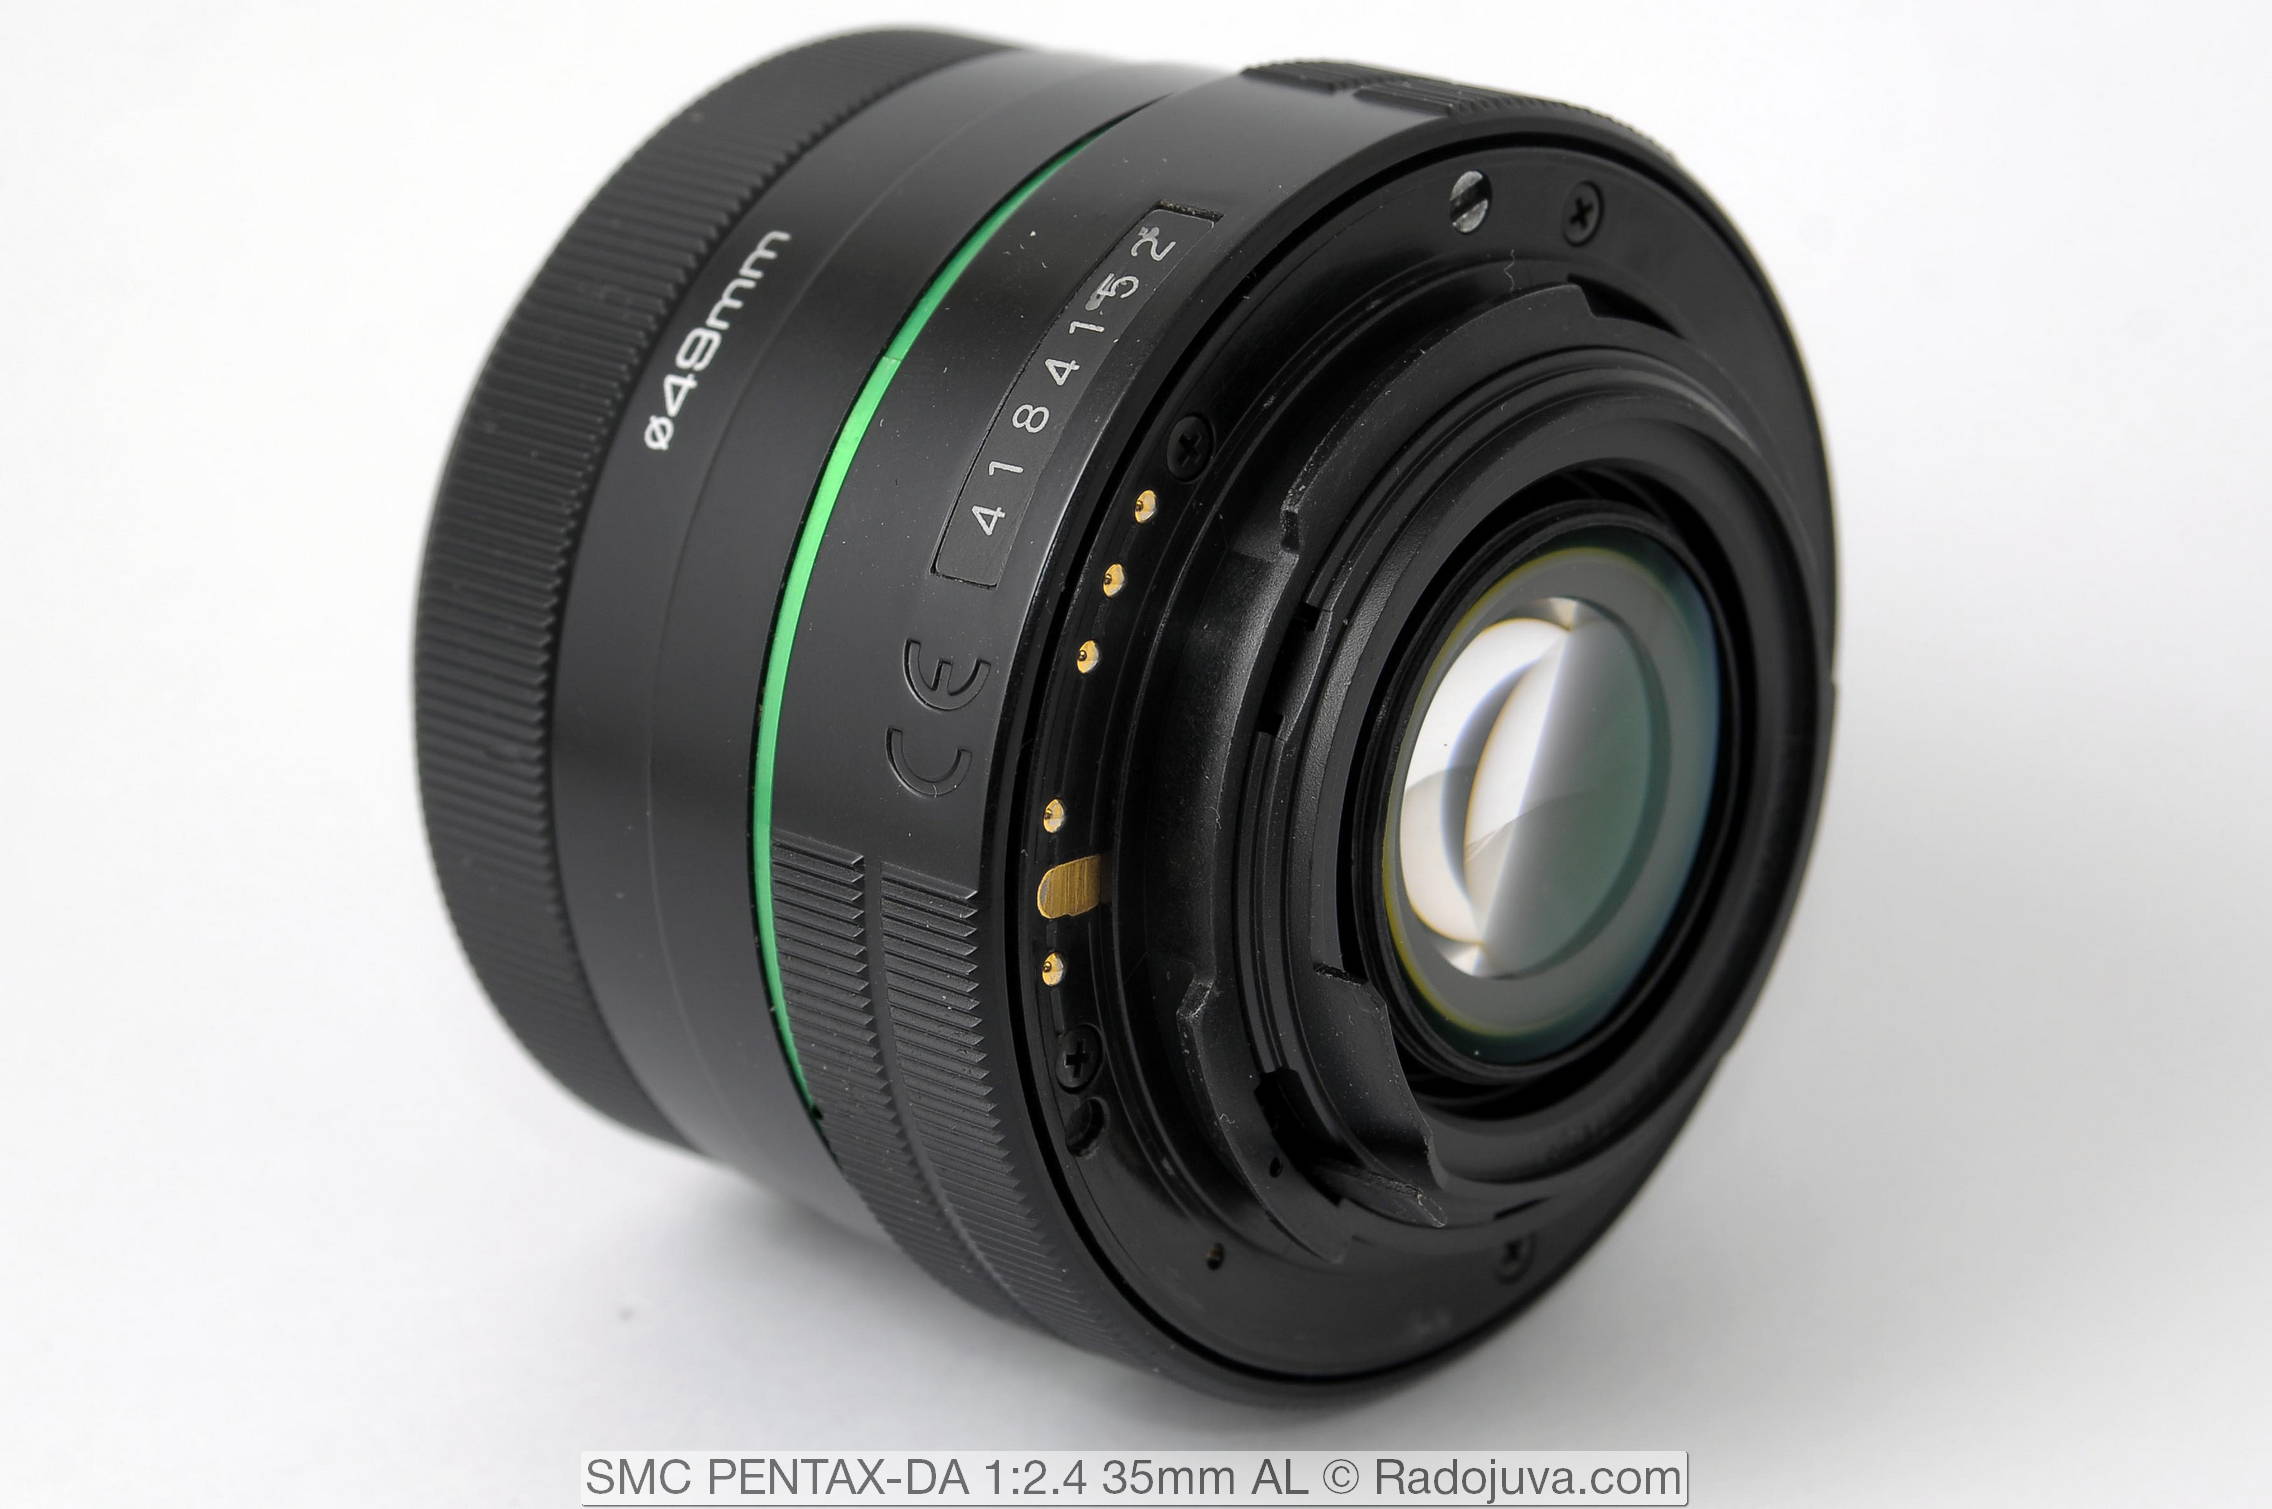 SMC PENTAX-DA 1 Review: 2.4 35mm AL | Happy